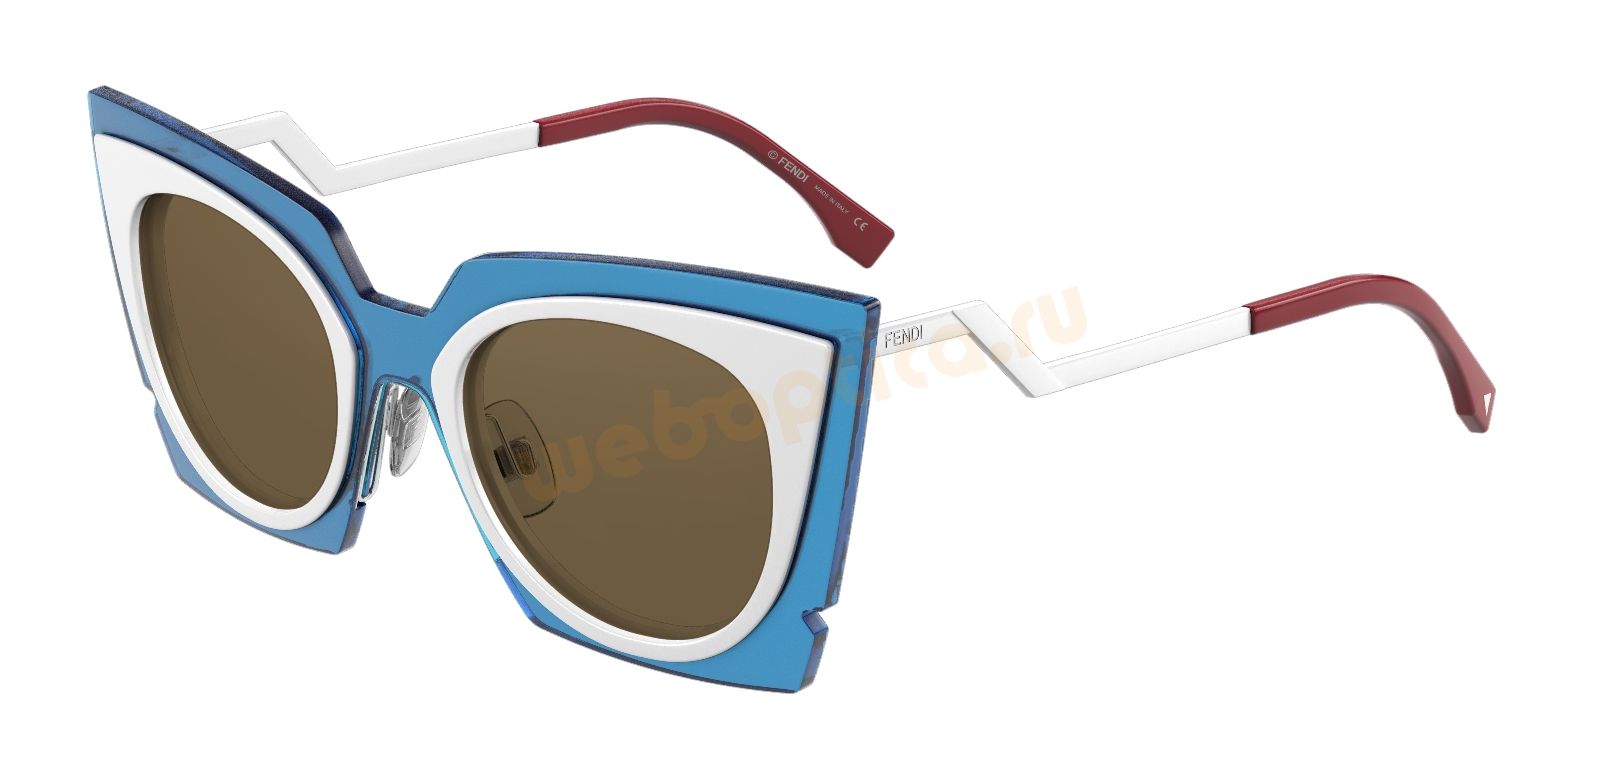 Солнцезащитные очки FENDI FF 0117S-IC4 купить в москве, цена, интернет магазин очков